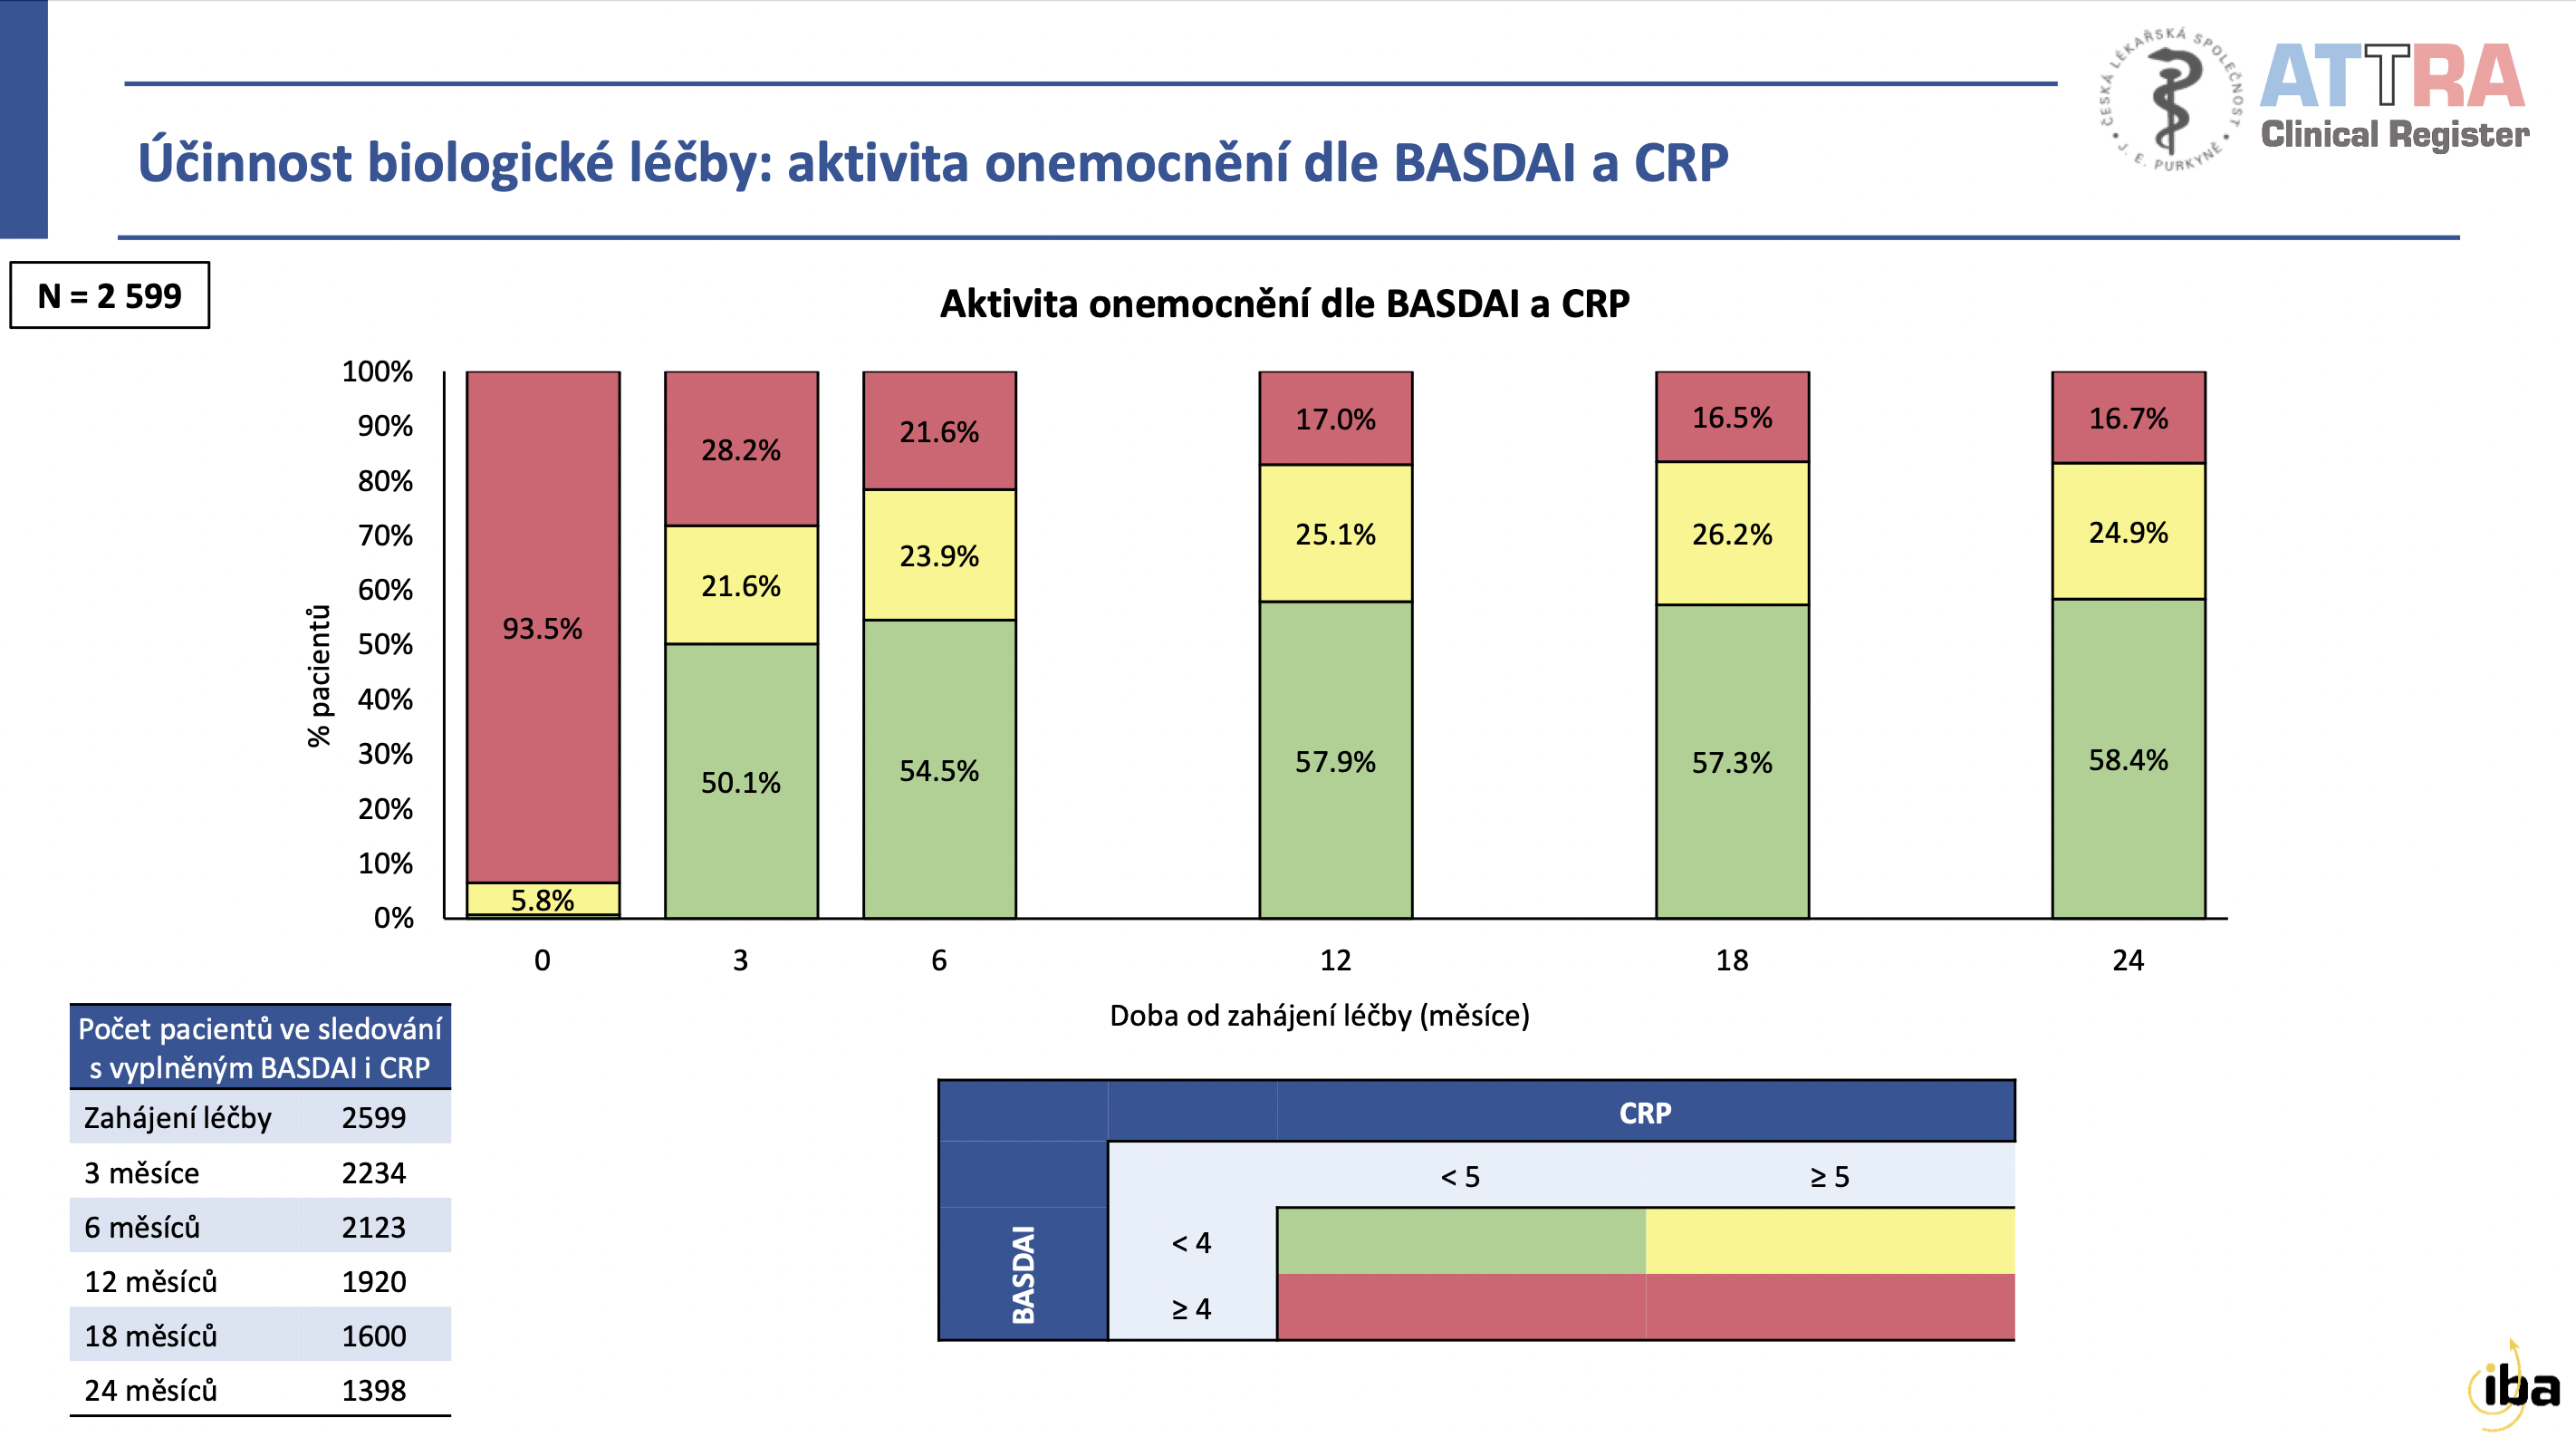 Účinnost biologické léčby podle dotazníku BASDAI a hladiny CRP v krvi. 